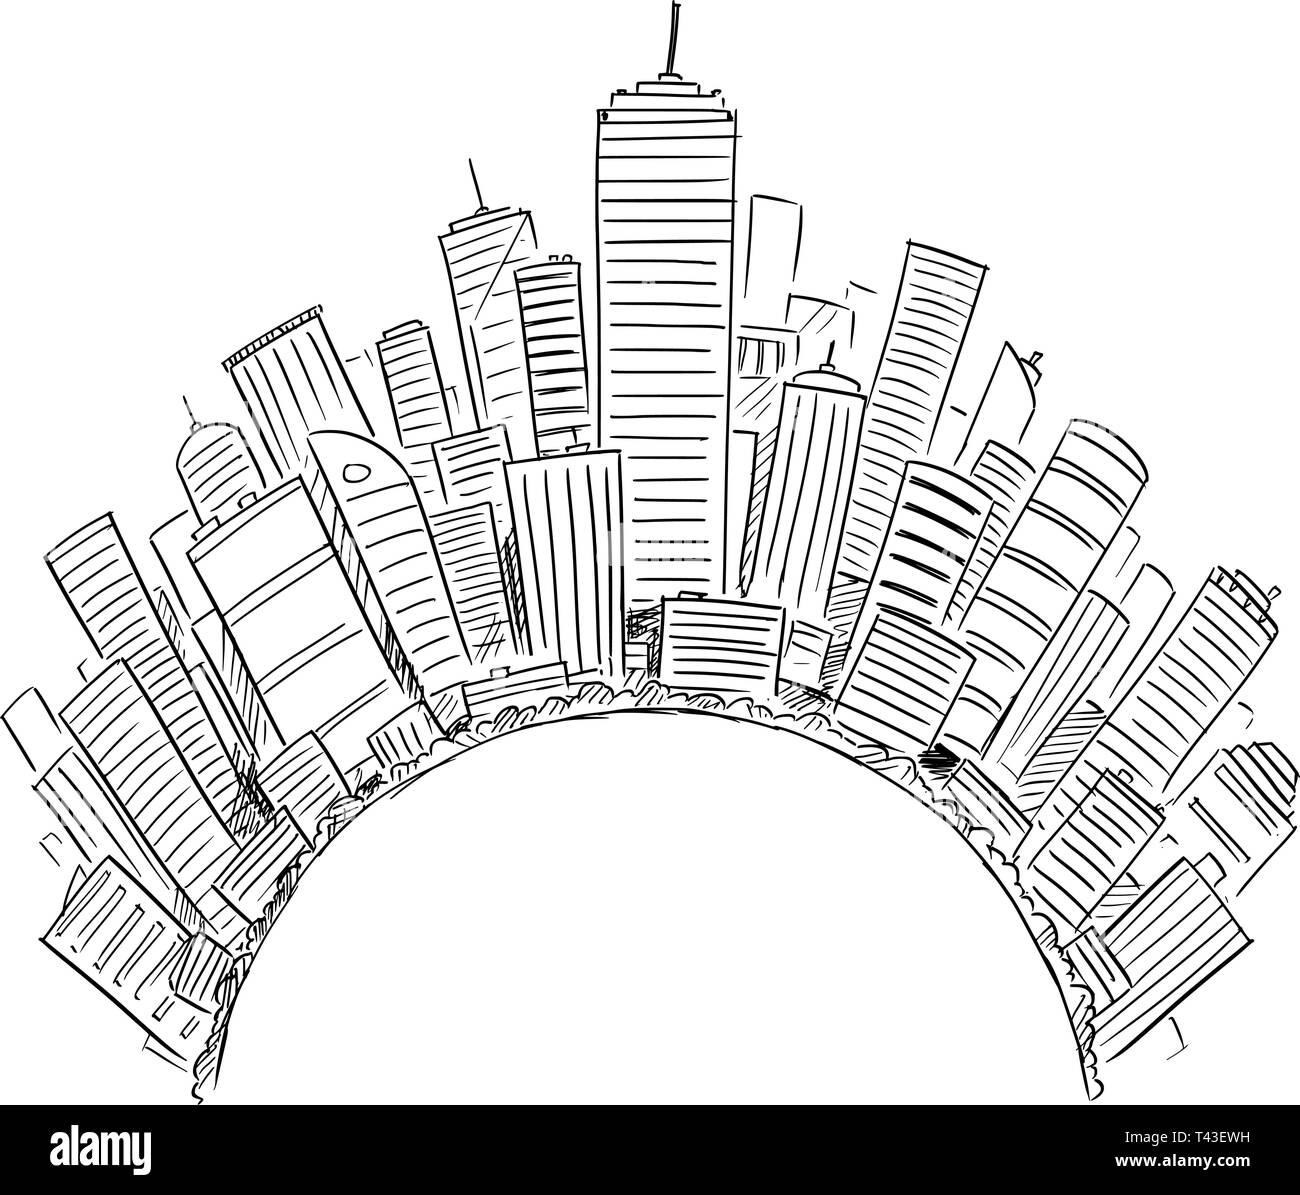 De dessin vectoriel des tours d'immeubles modernes couvrant la moitié de monde ou d'un cercle comme représentation de la civilisation mondiale ou de l'entreprise. Concept de secteur financier et l'économie mondiale. Illustration de Vecteur